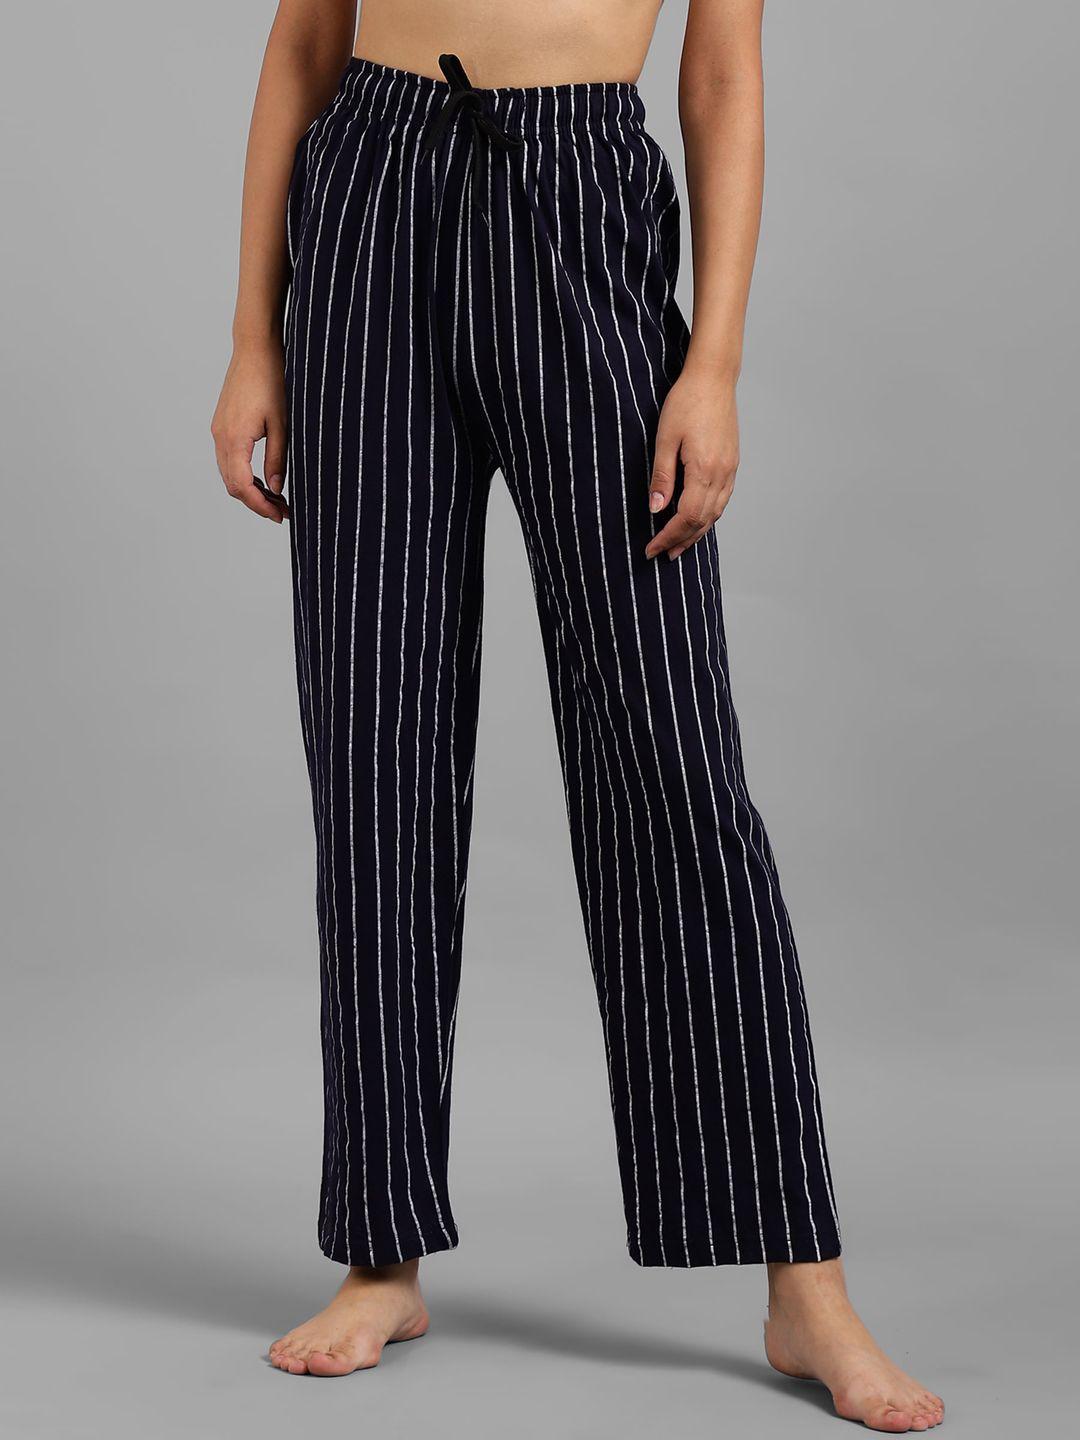 kotty women navy blue & white striped lounge pants